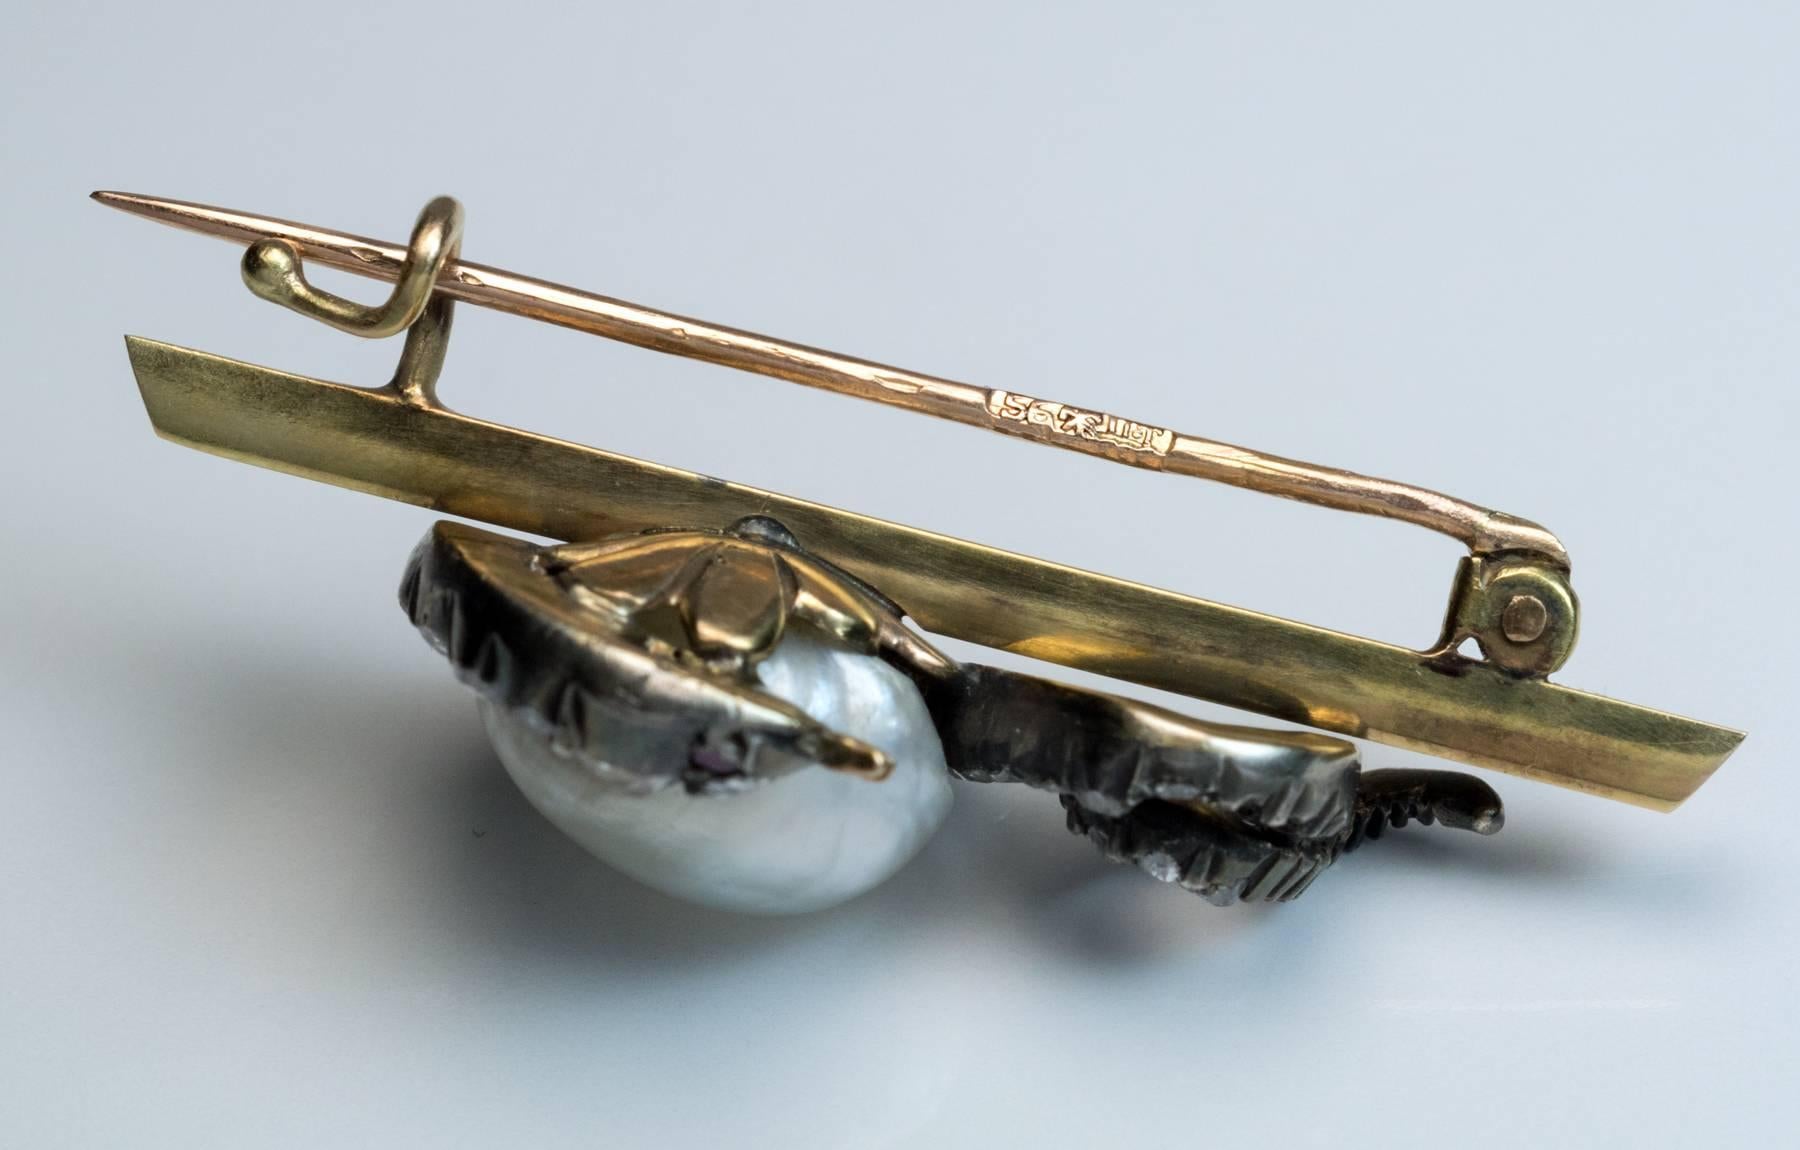 vers 1885

La broche est conçue comme un serpent en argent serti de diamants, enroulé autour d'une grande perle naturelle baroque. Le serpent et la perle sont montés sur une barre en or 14K.

La perle mesure environ 10,8 x 8,3 mm.

Les yeux du